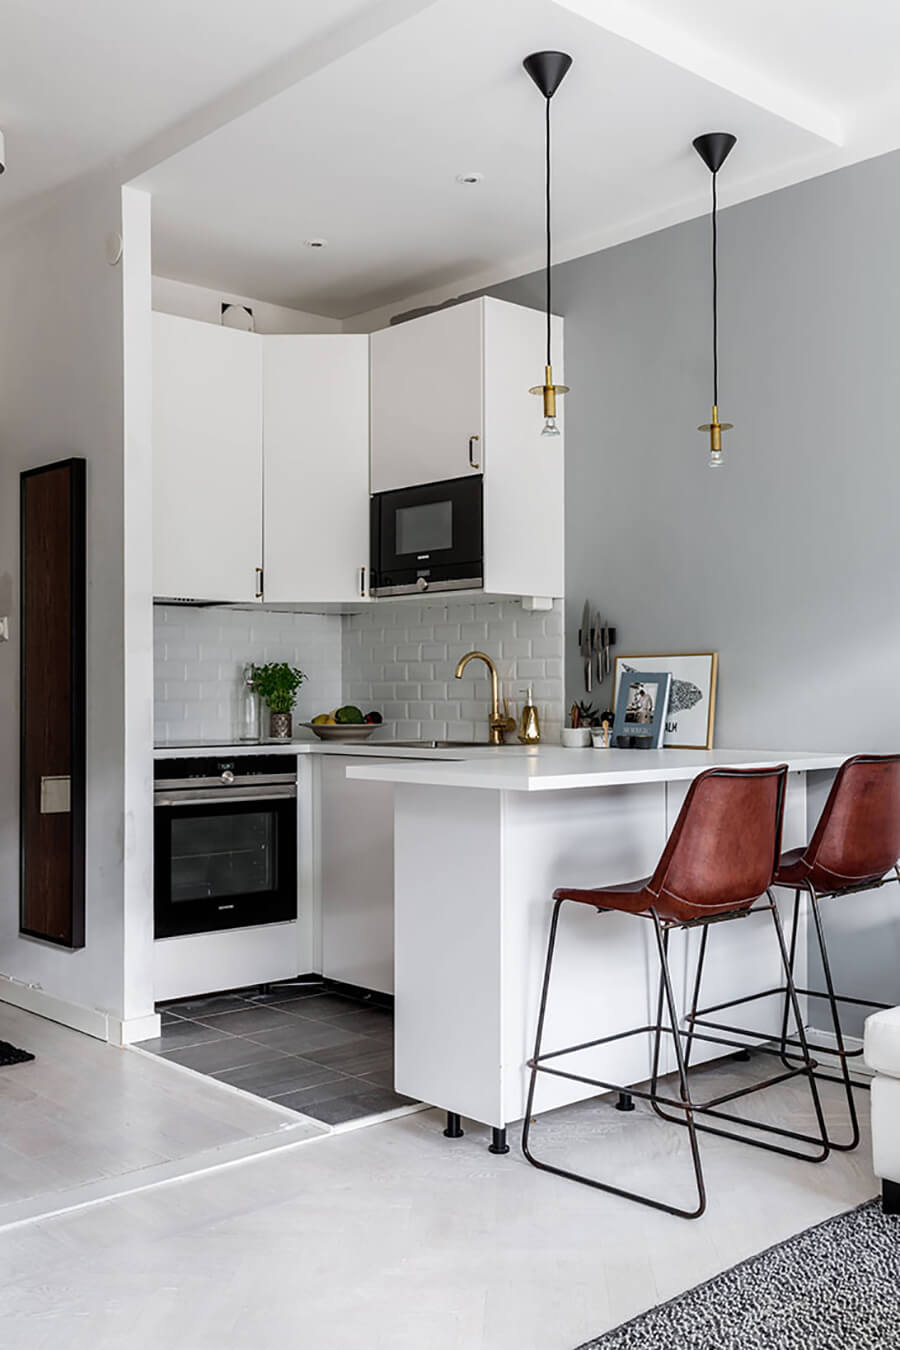 Una cocina integrada moderna de color blanco con un mesón blanco y asientos altos